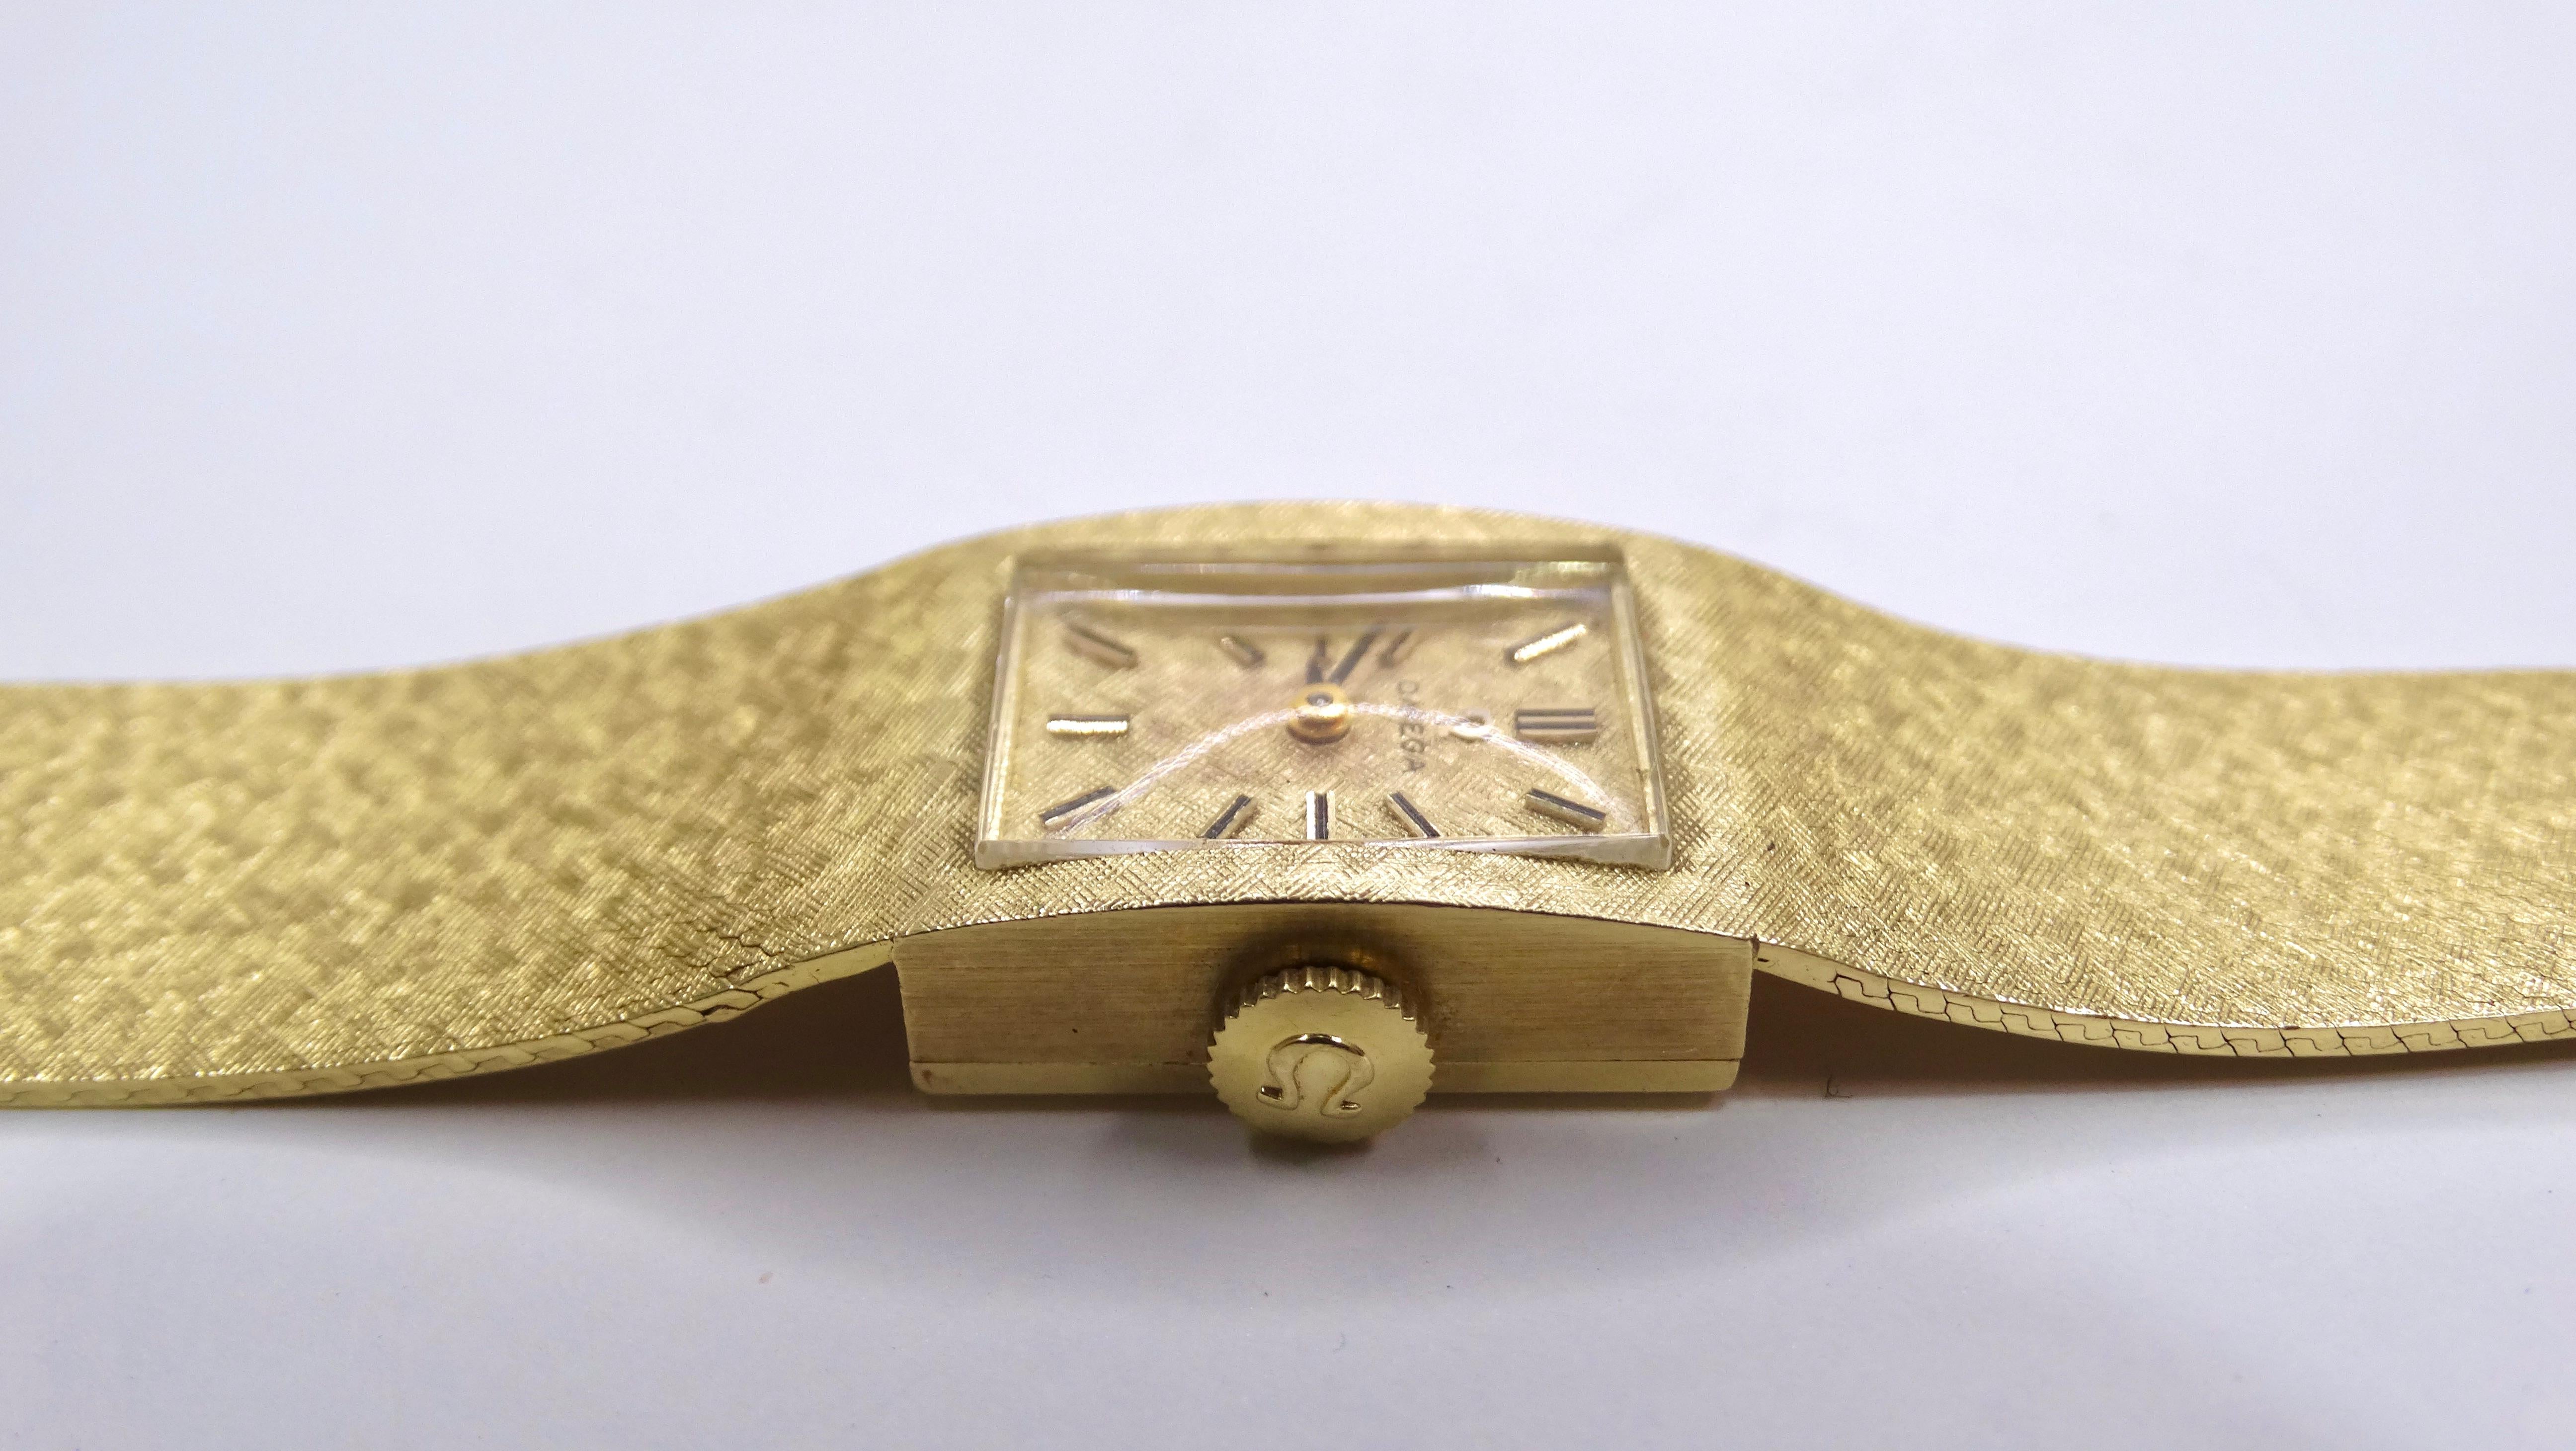 Ergänzen Sie Ihre Sammlung um eine elegante und coole Omega-Uhr. Durch sein minimalistisches Design und seine Zusammensetzung aus massivem 14-karätigem Gold ist er perfekt für den Alltag geeignet. Dieses Schmuckstück lässt sich perfekt mit anderen